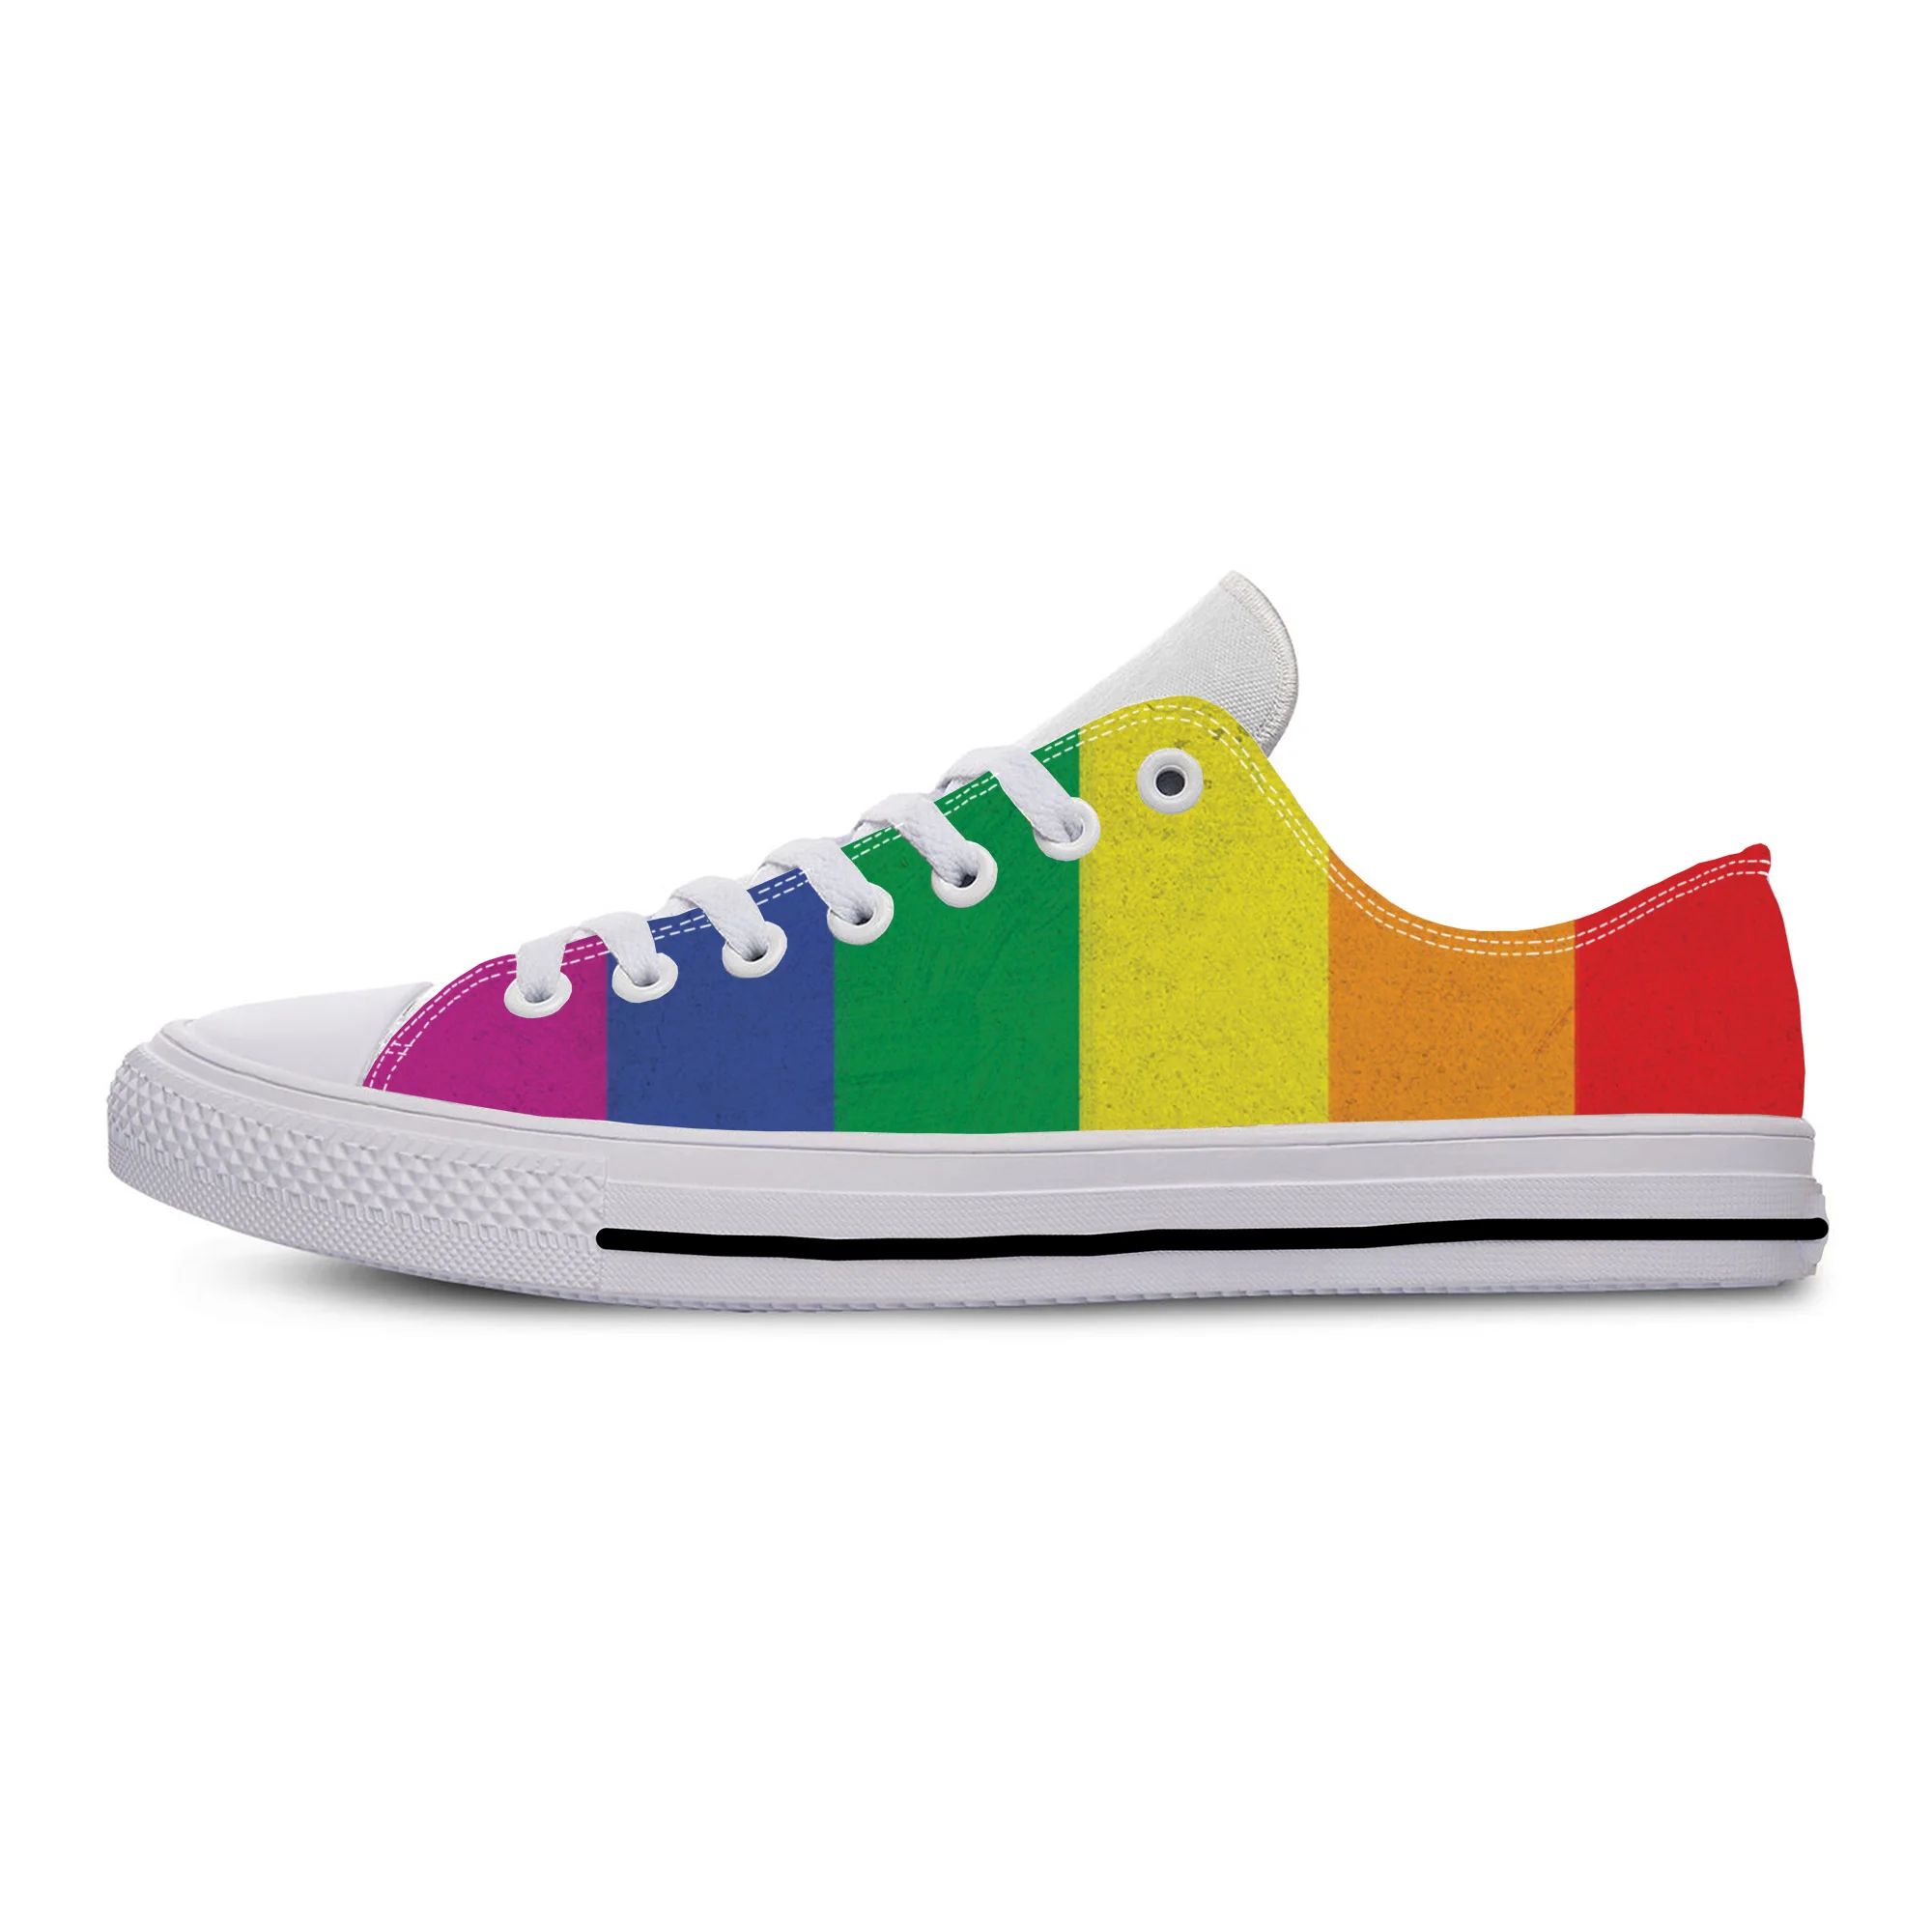 Color:Rainbow LGBT8Shoe Size:9.5